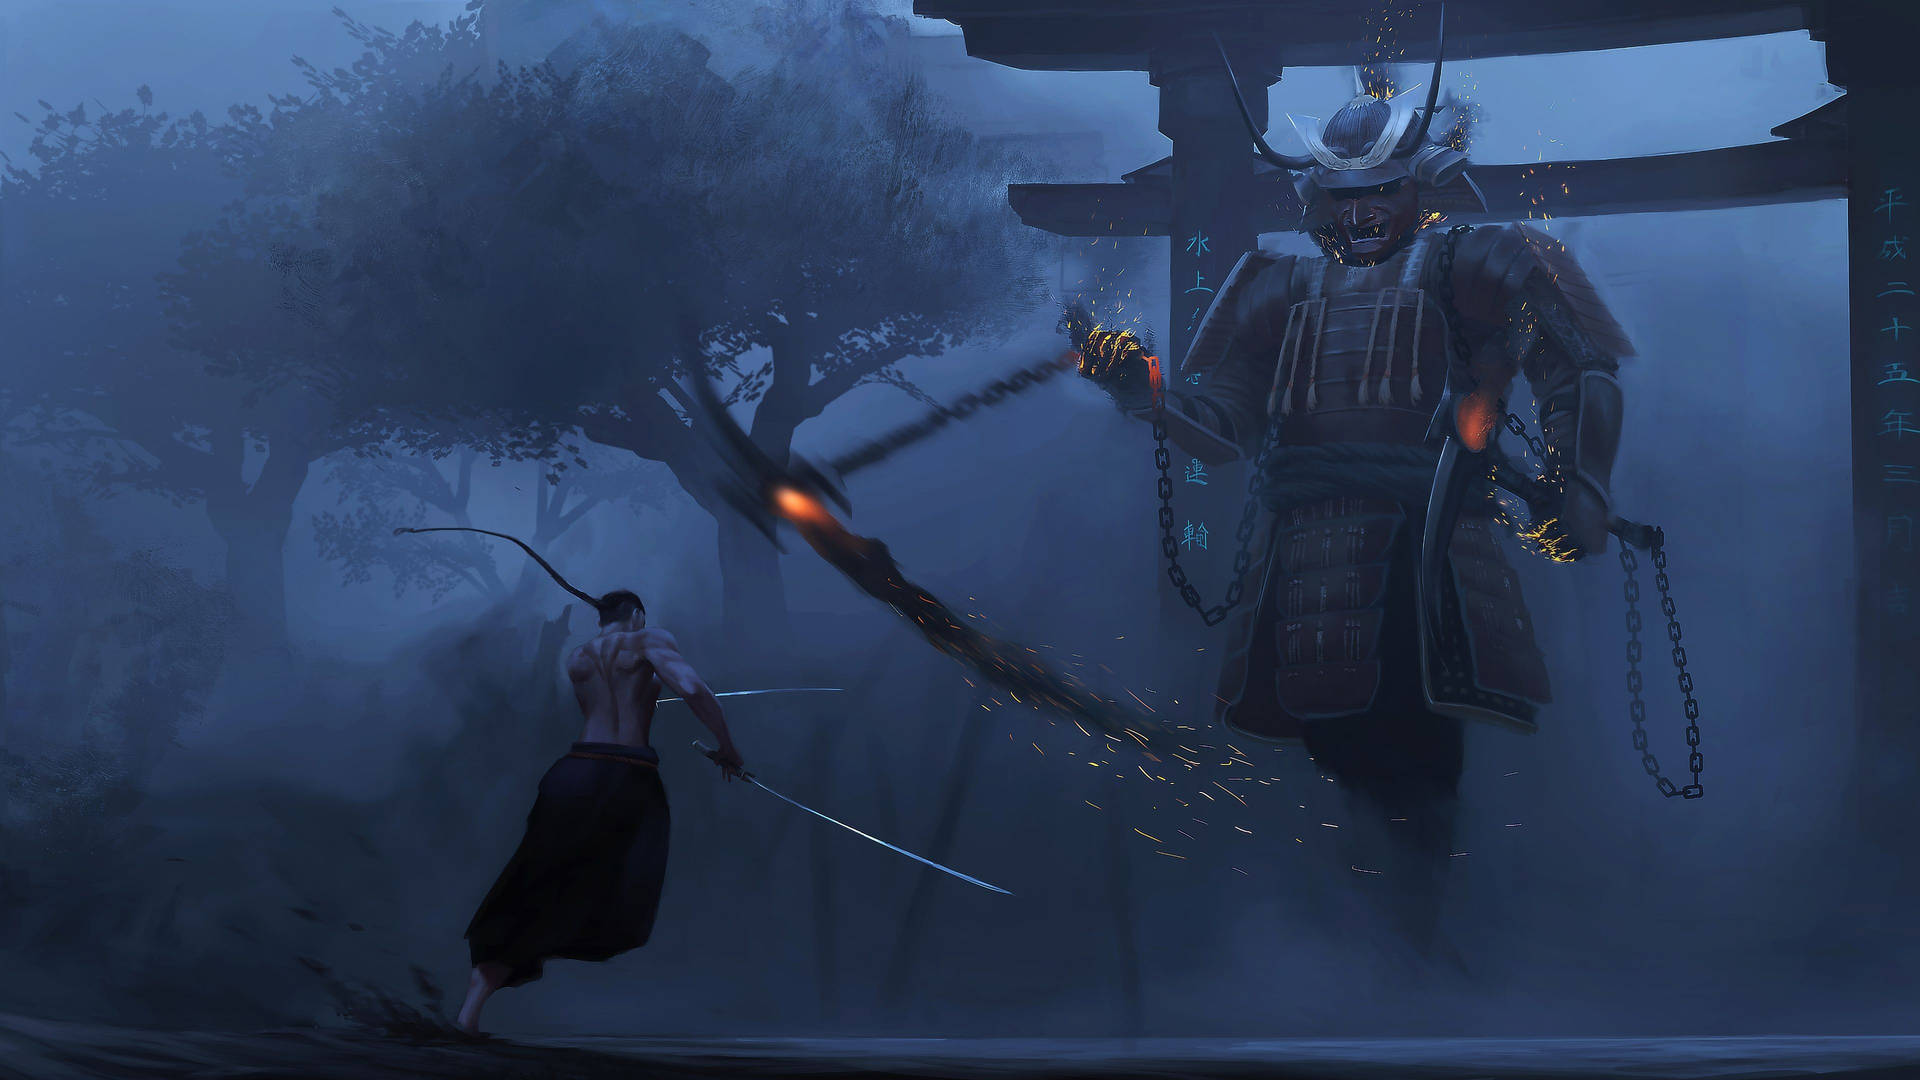 Samuraikrieger Steht Am Abend In Tokio Wallpaper